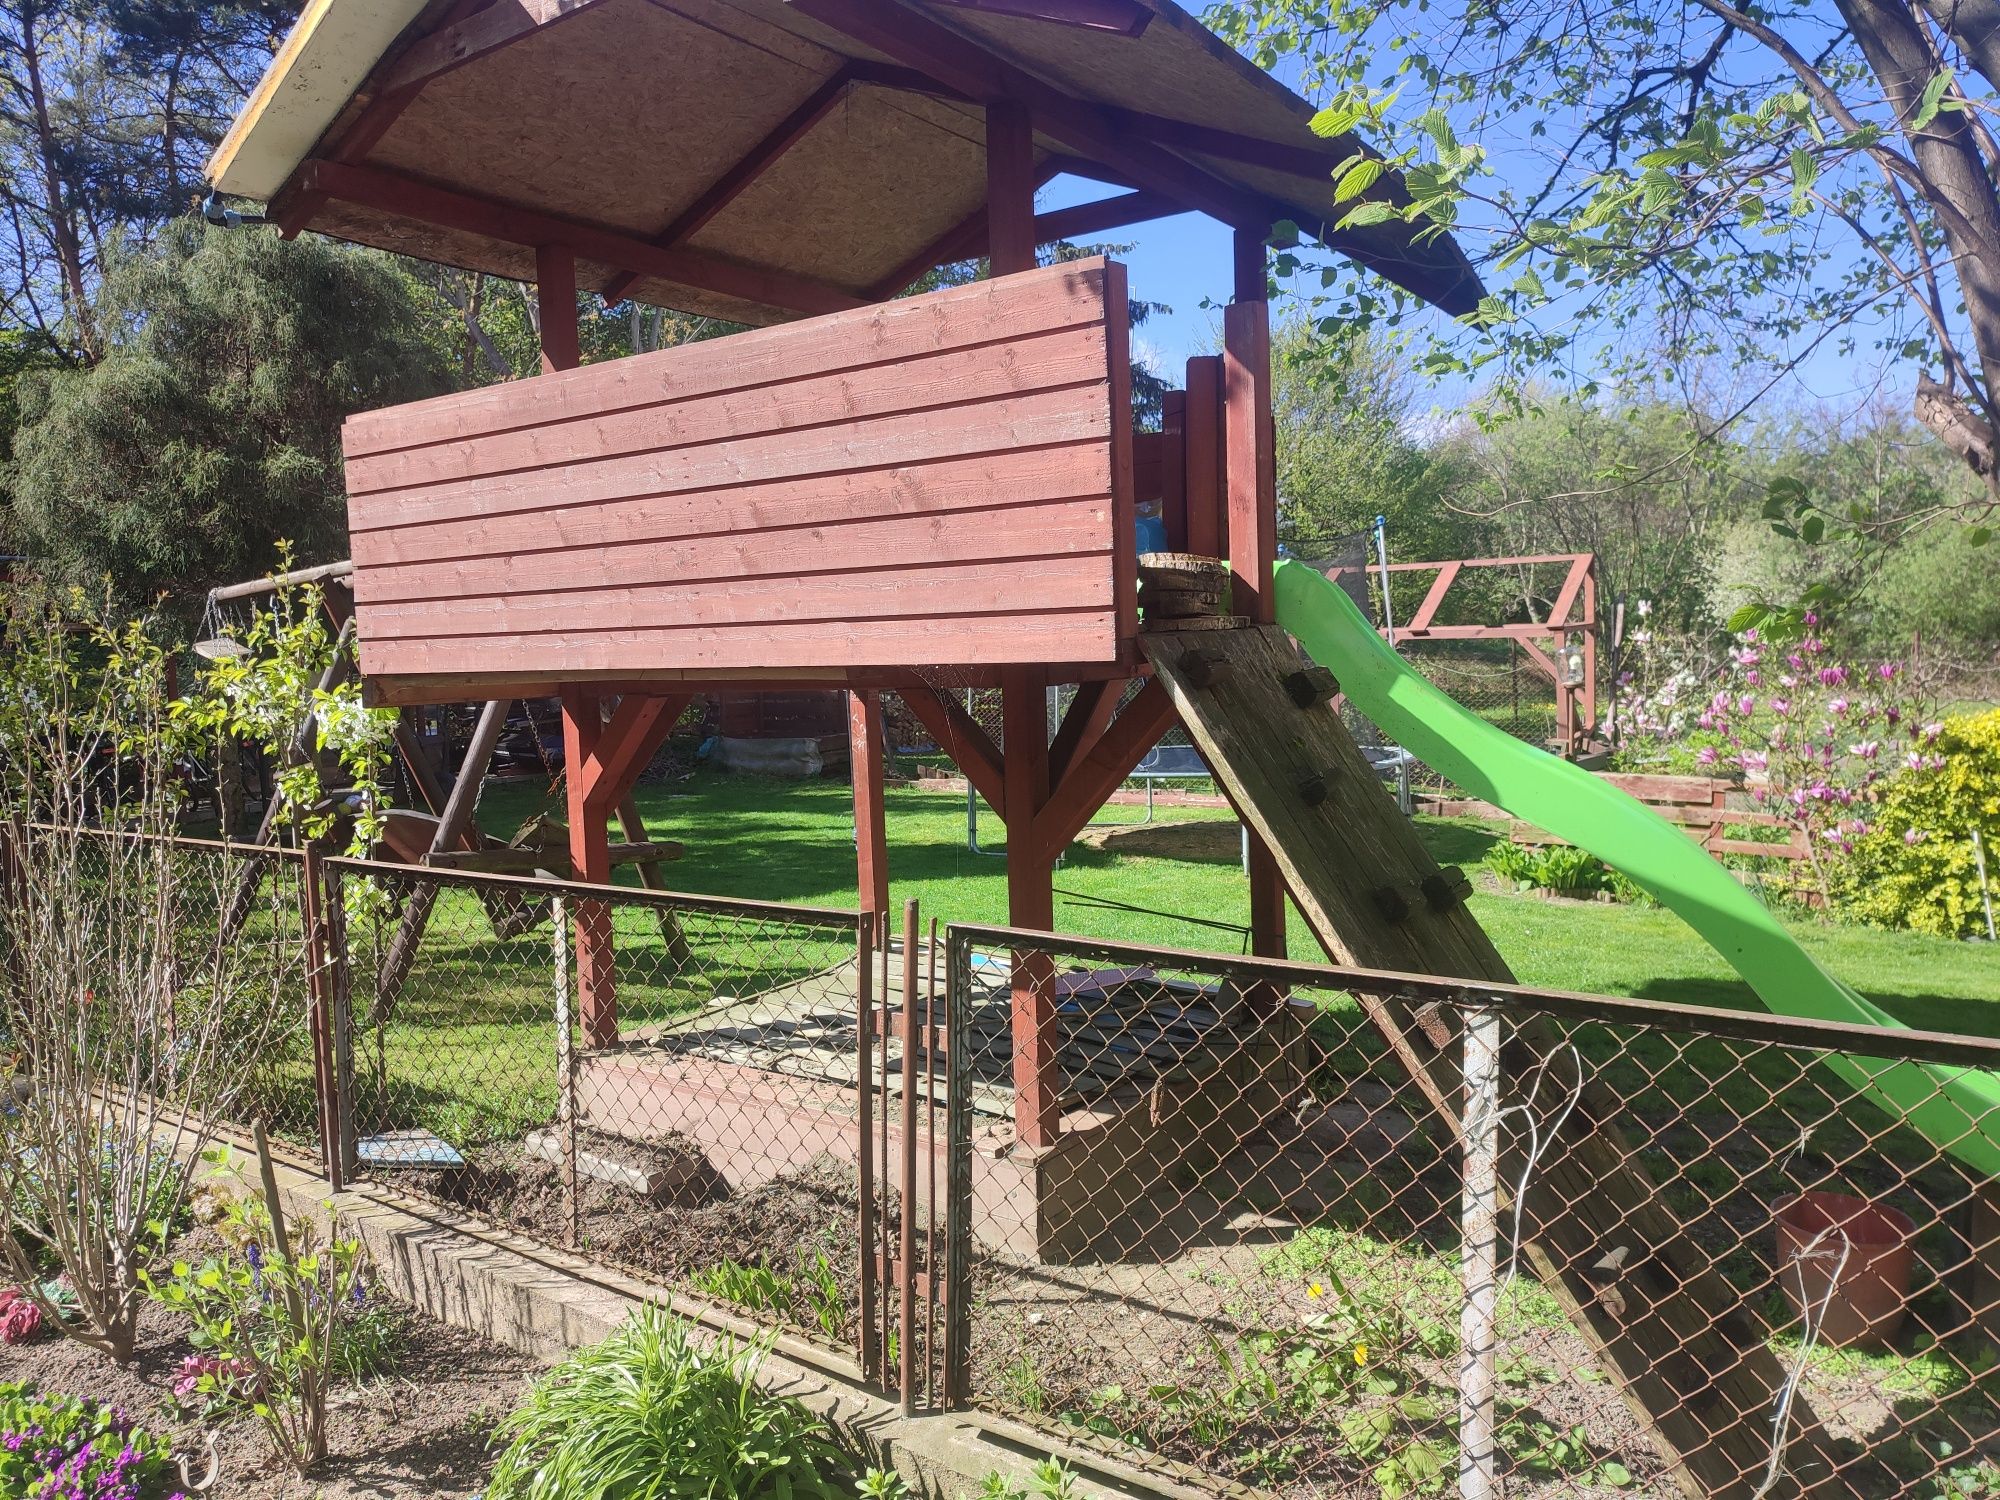 Piaskownica domek ogrodowy dla dzieci zjezdzalnia plac zabaw